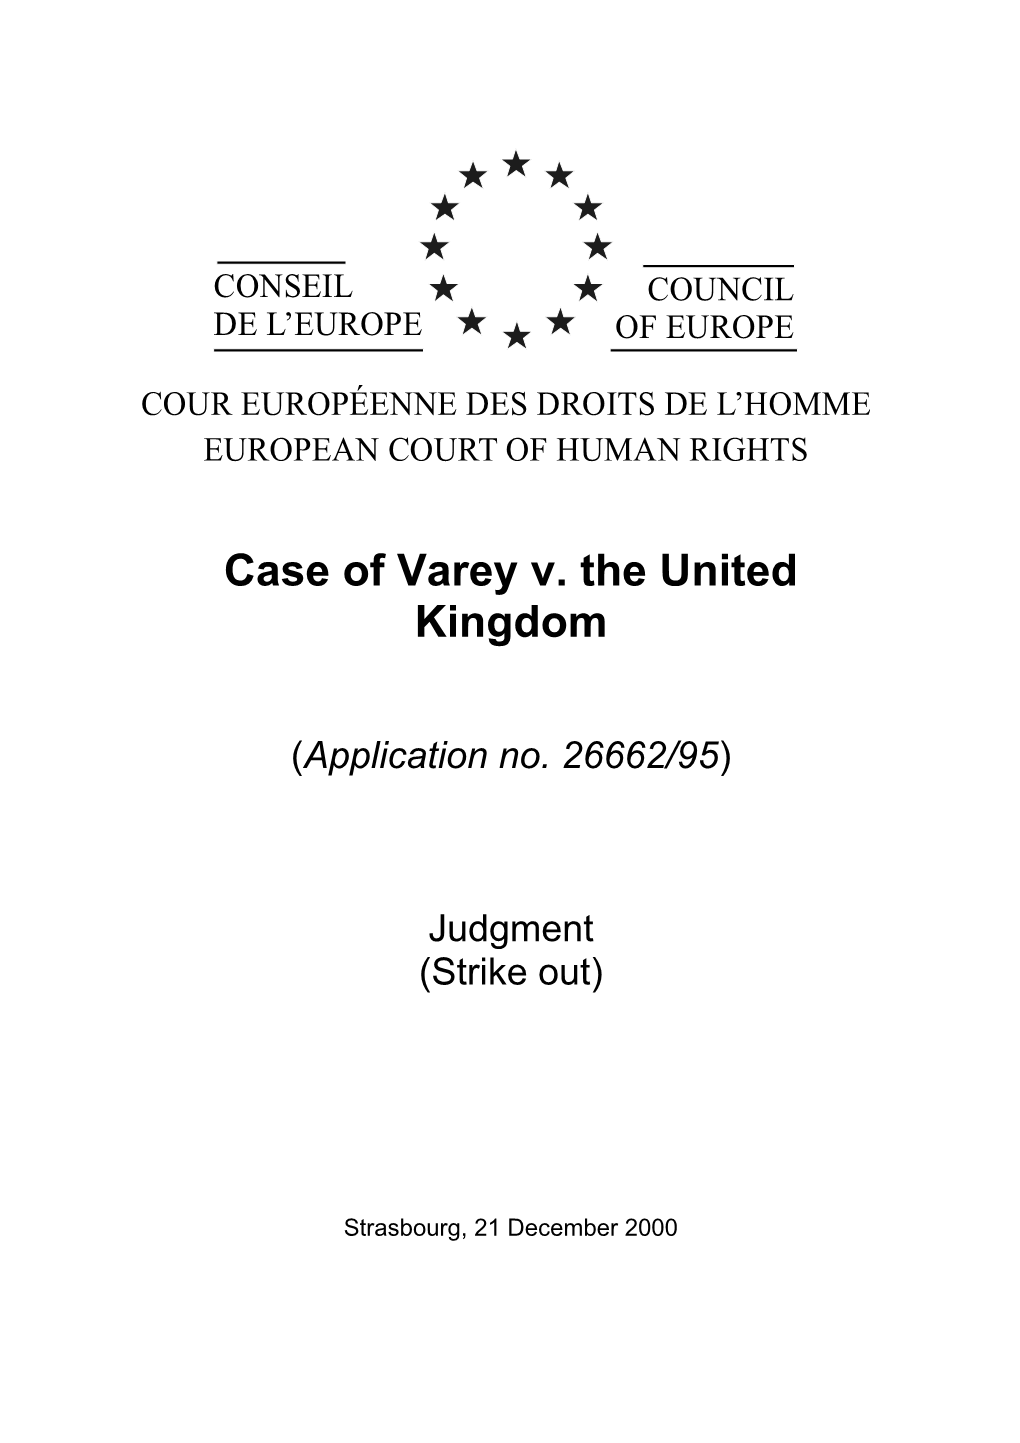 Case of Varey V. the United Kingdom